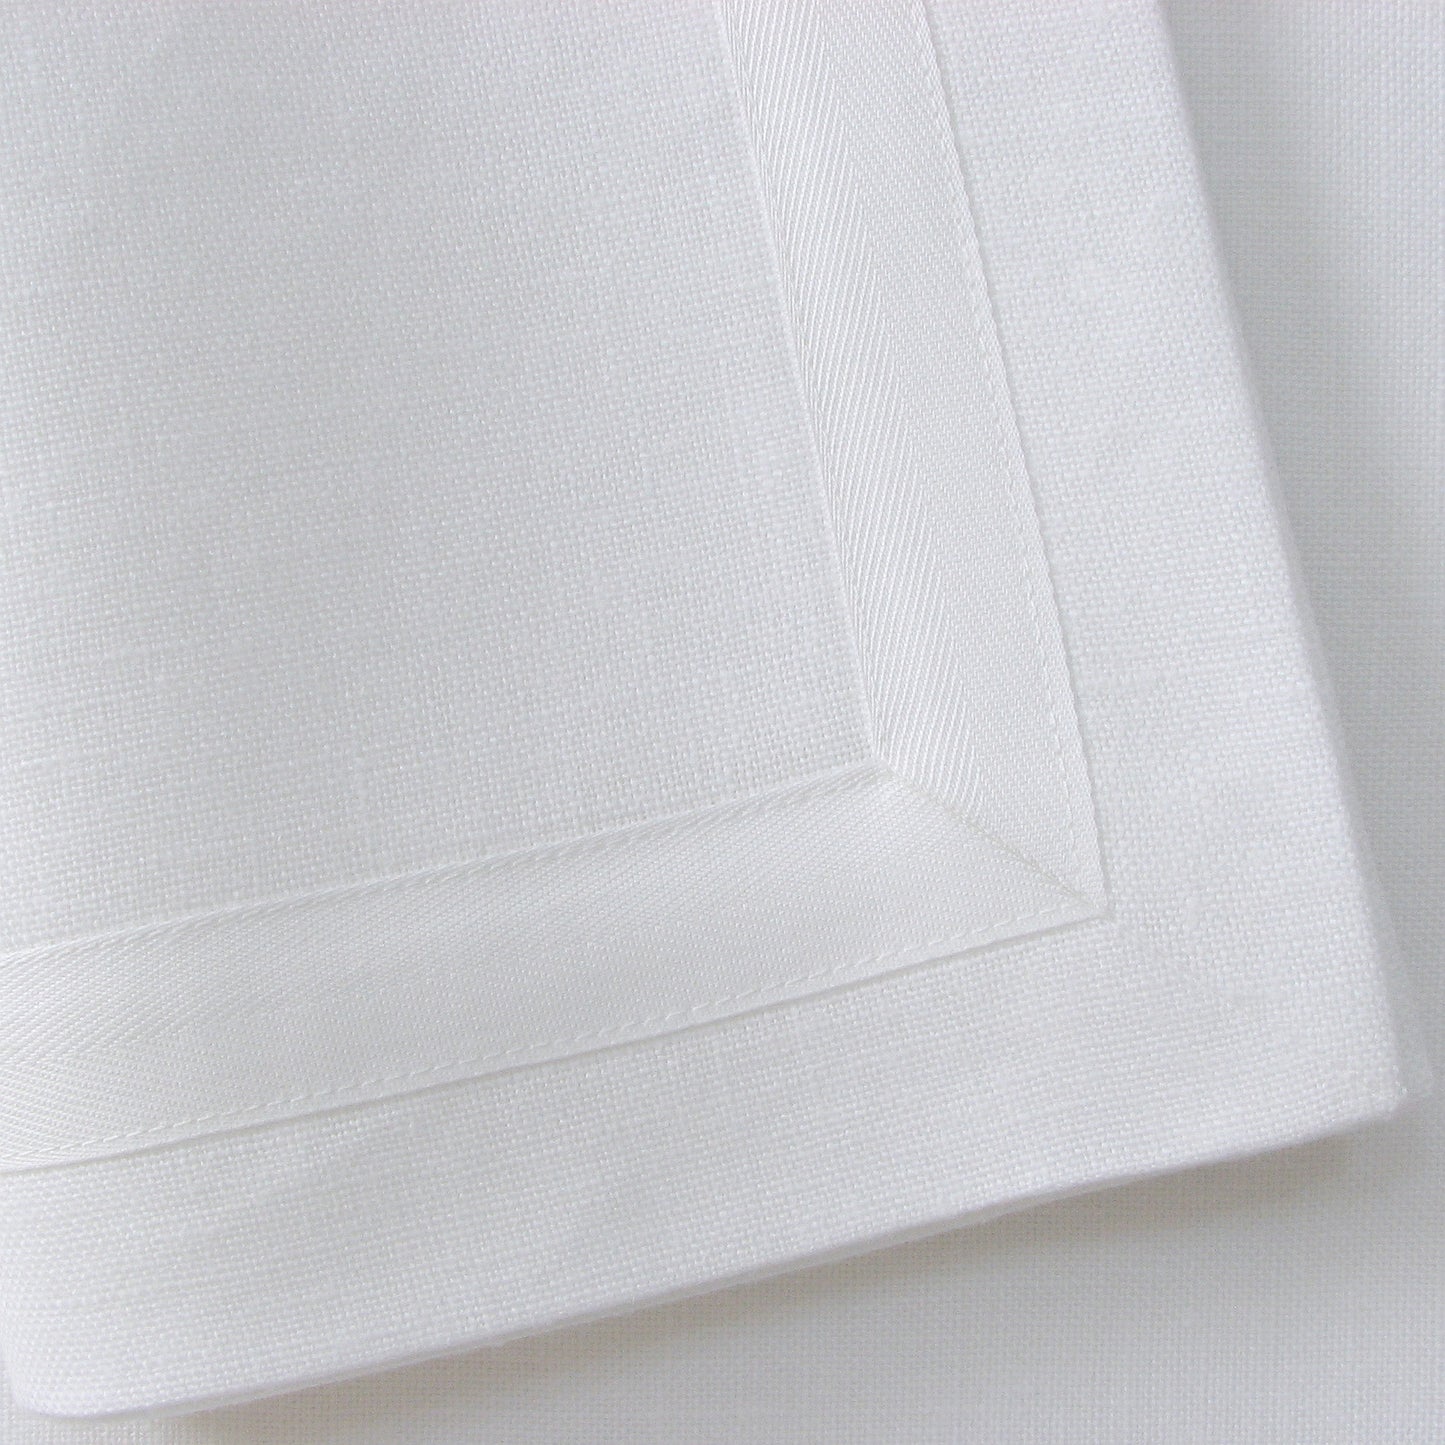 Serviettes de table vertes avec bordure en ruban blanc (lot de 4)